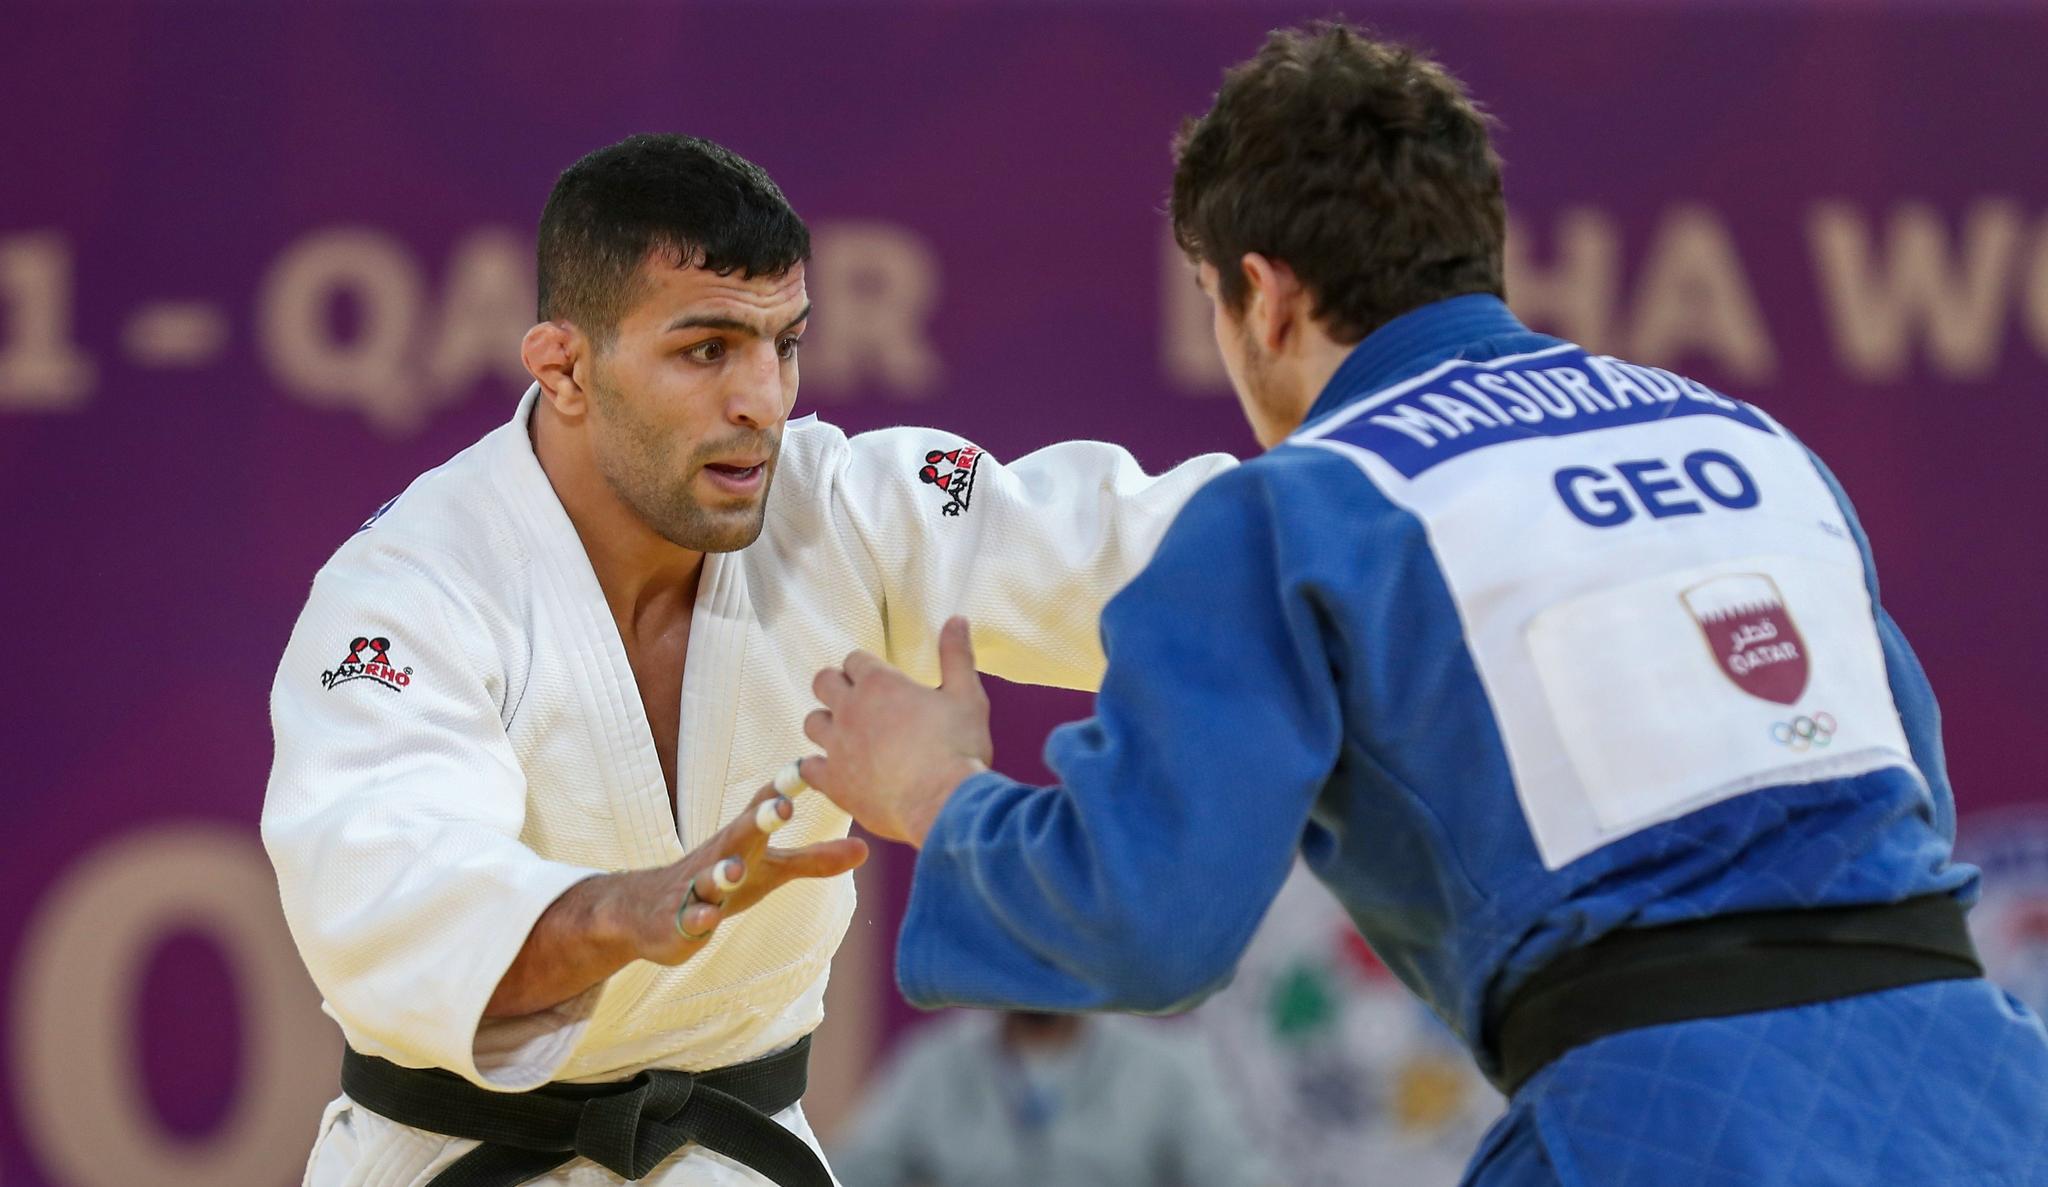 Said Mollaei (de branco) no Masters de Doha: judoca iraniano se naturalizou mongol após desafiar política de discriminação contra israelenses.